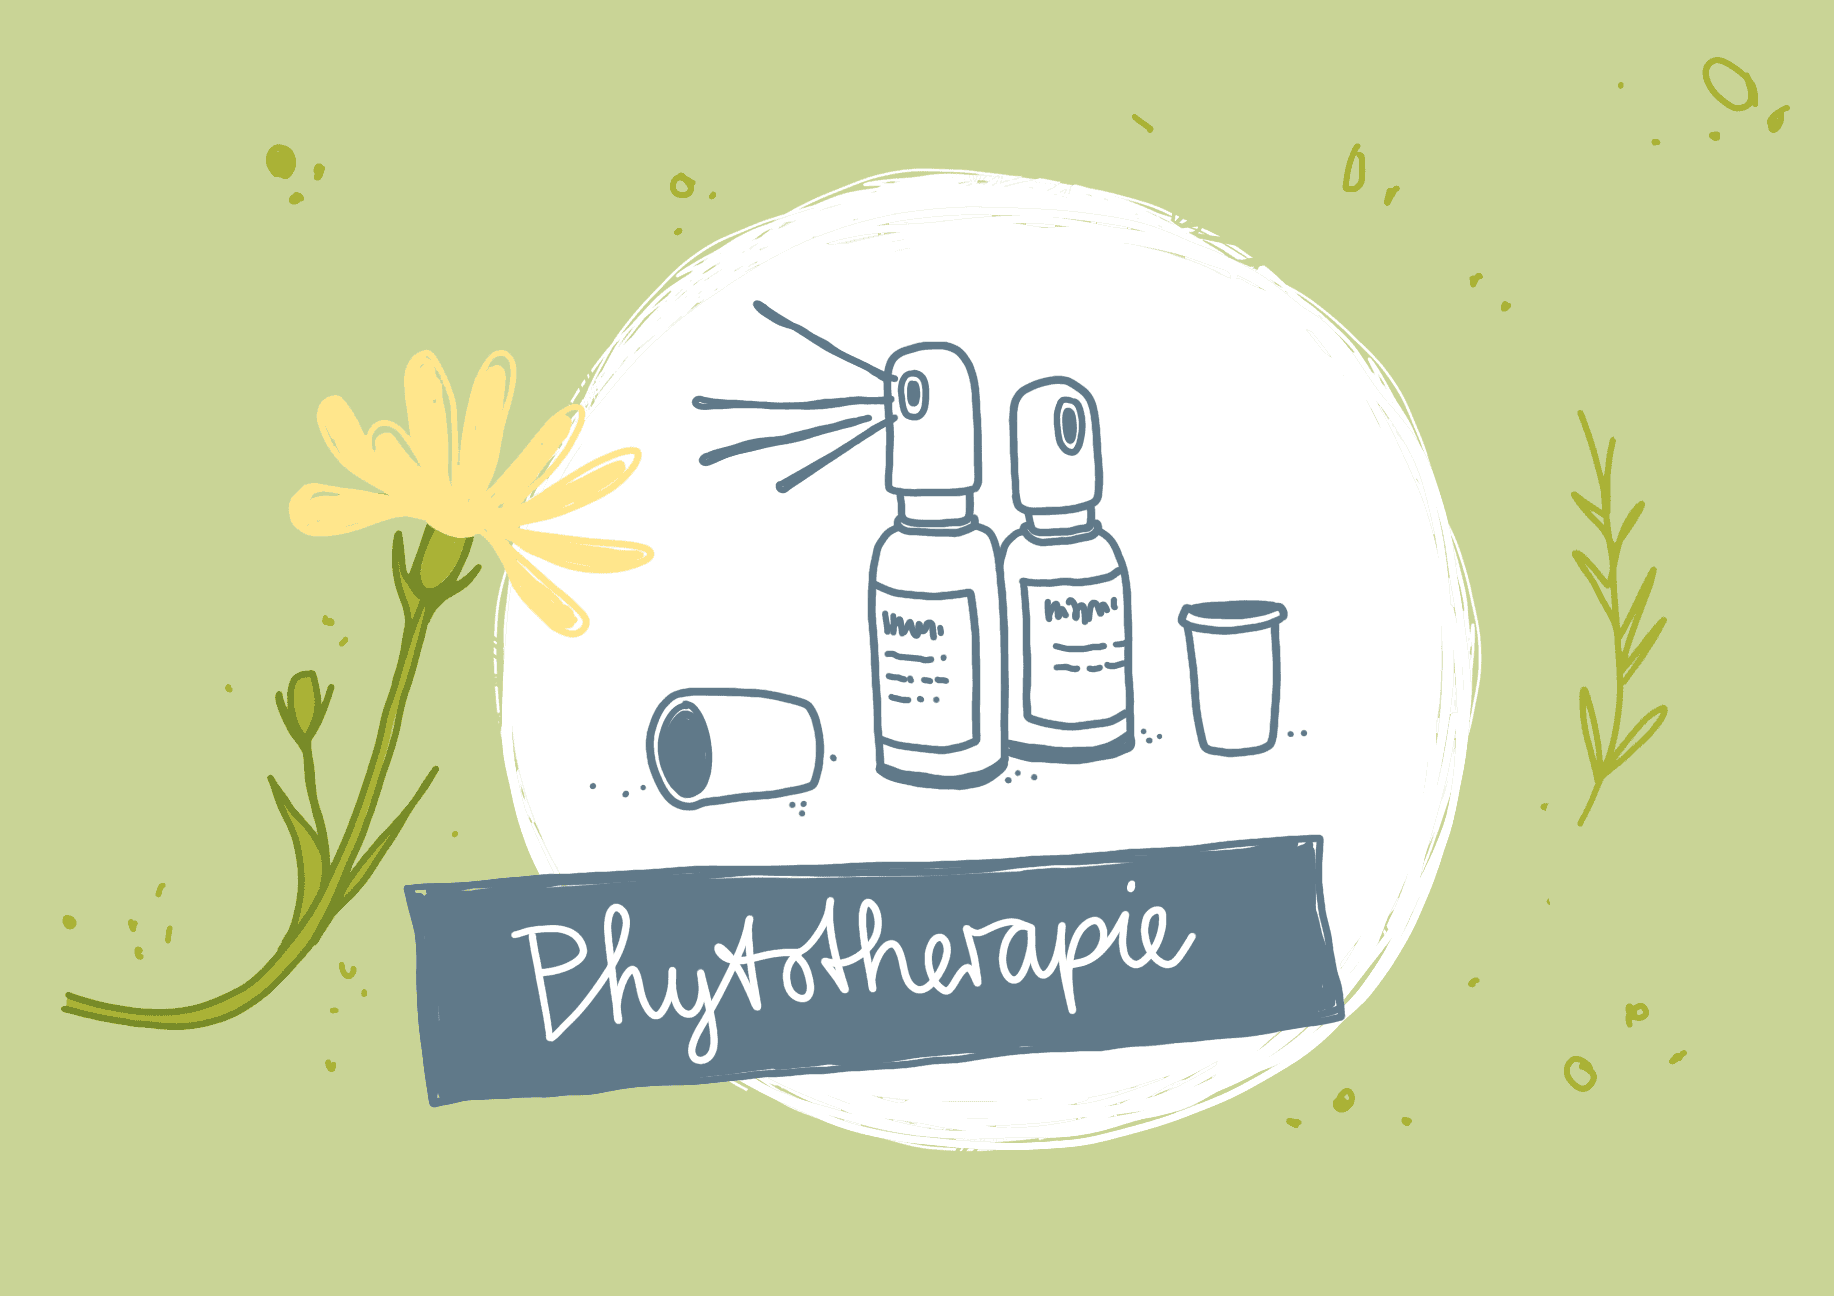 Phytotherapie